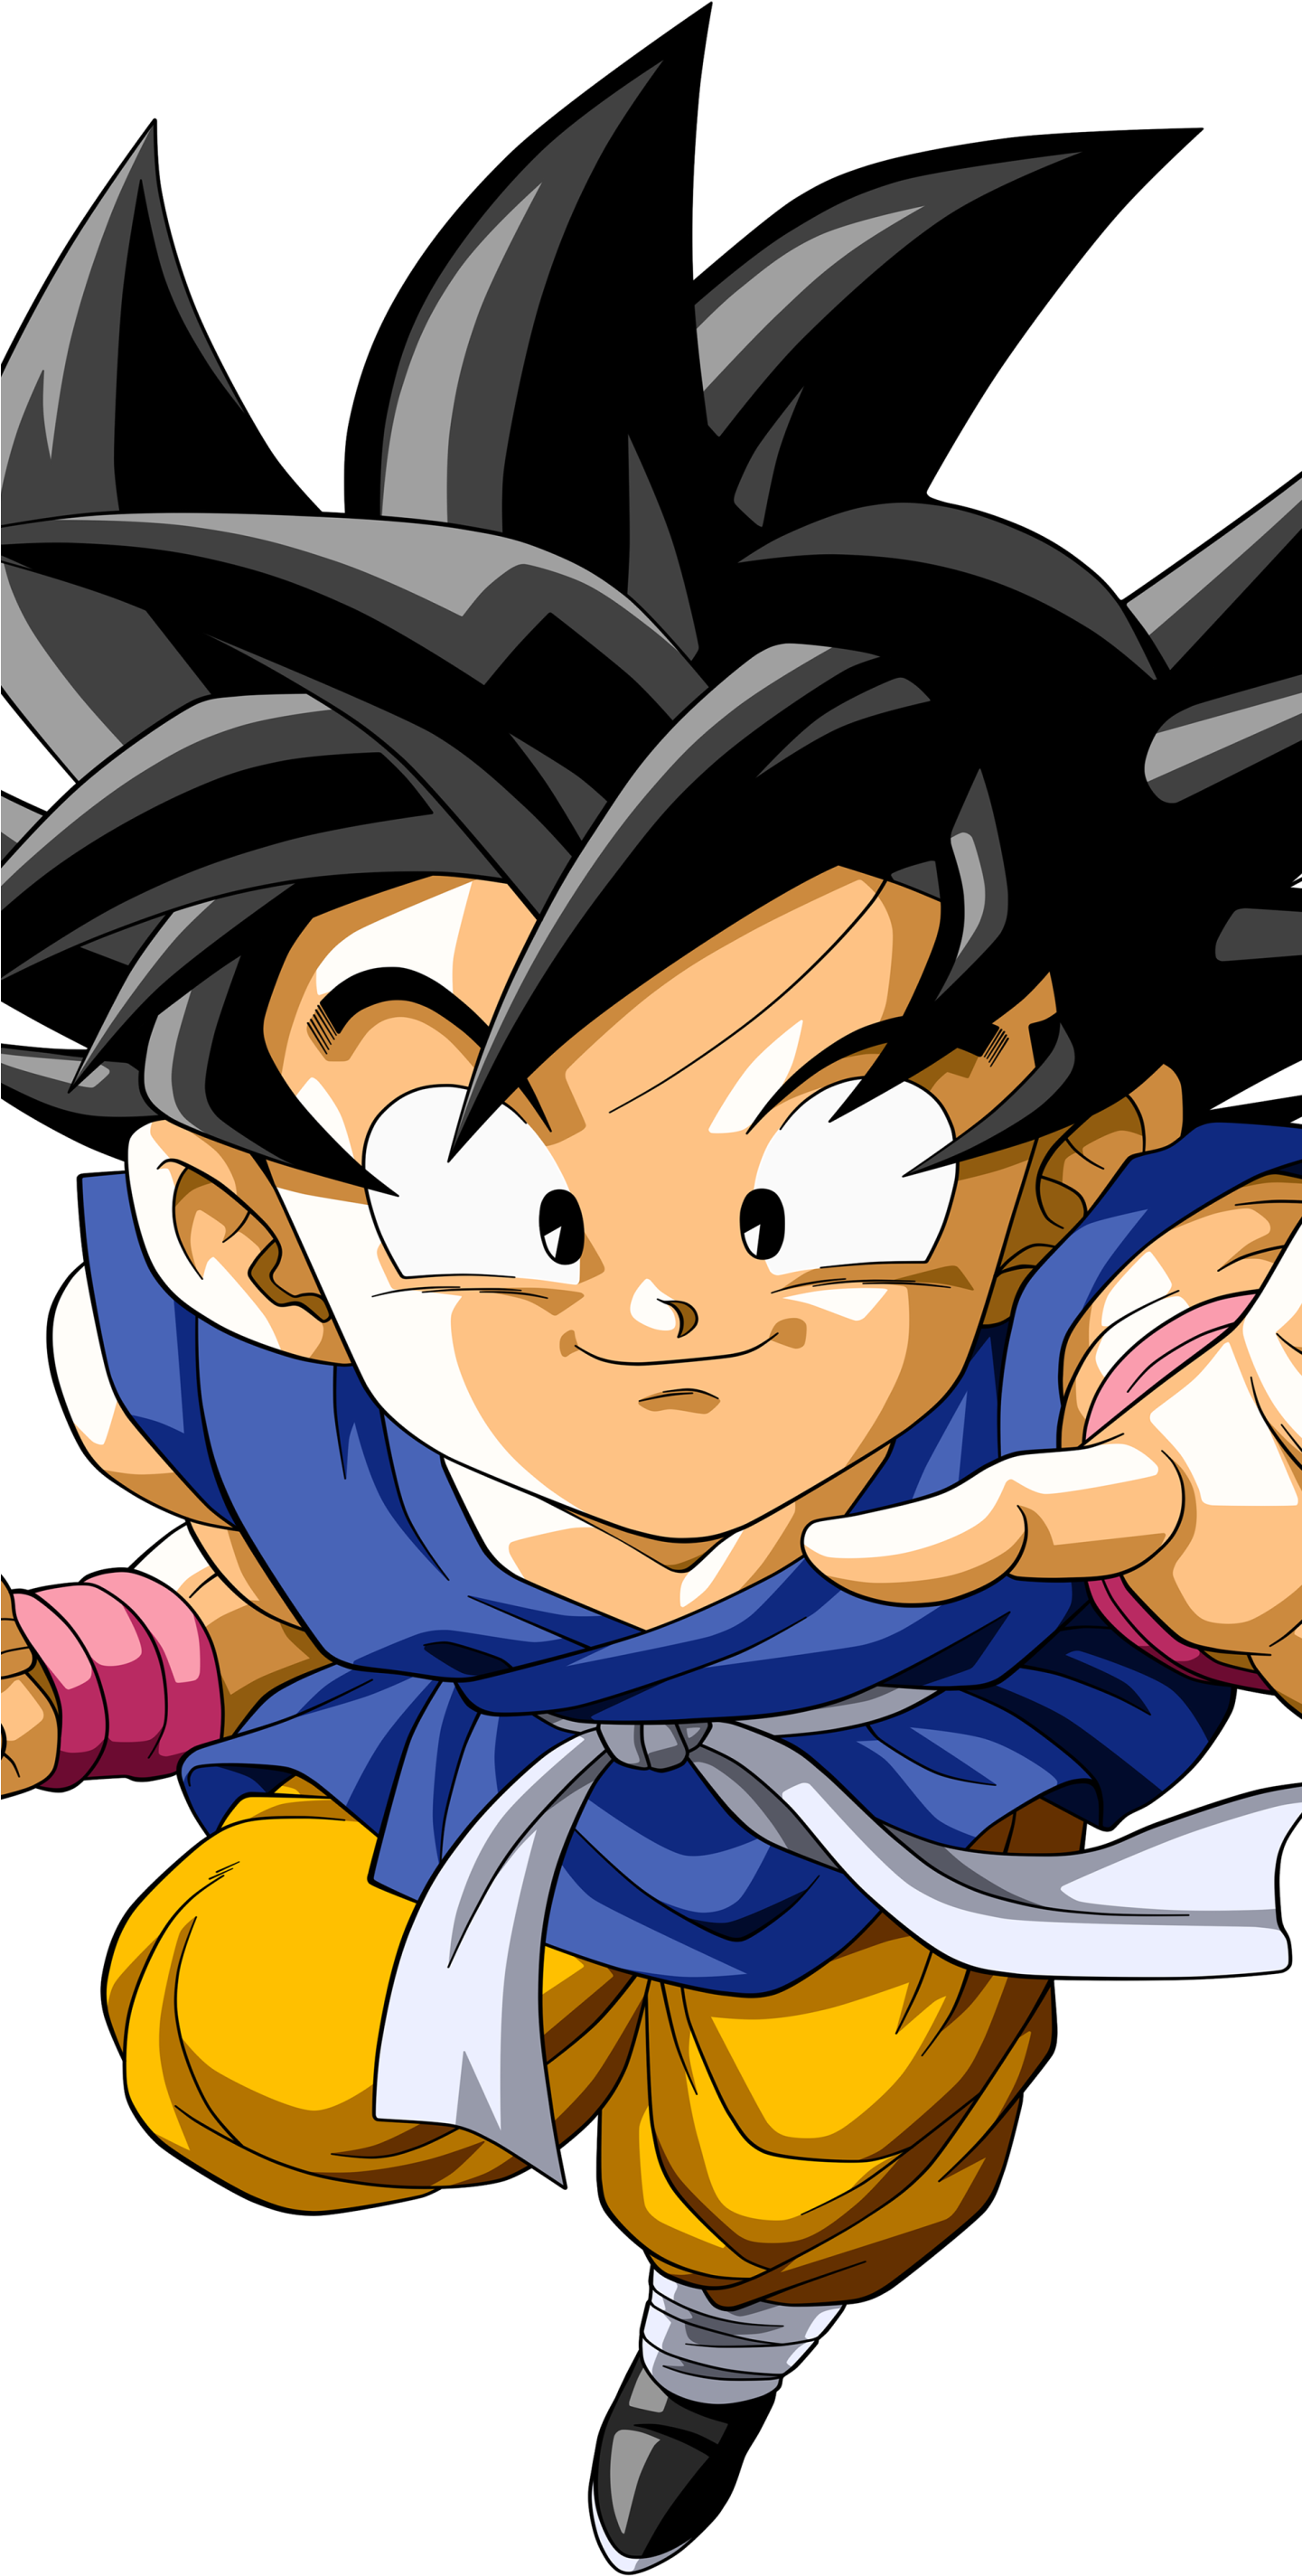 Download Kid Goku Anime / Dragon Ball Gt Mobile Wallpaper